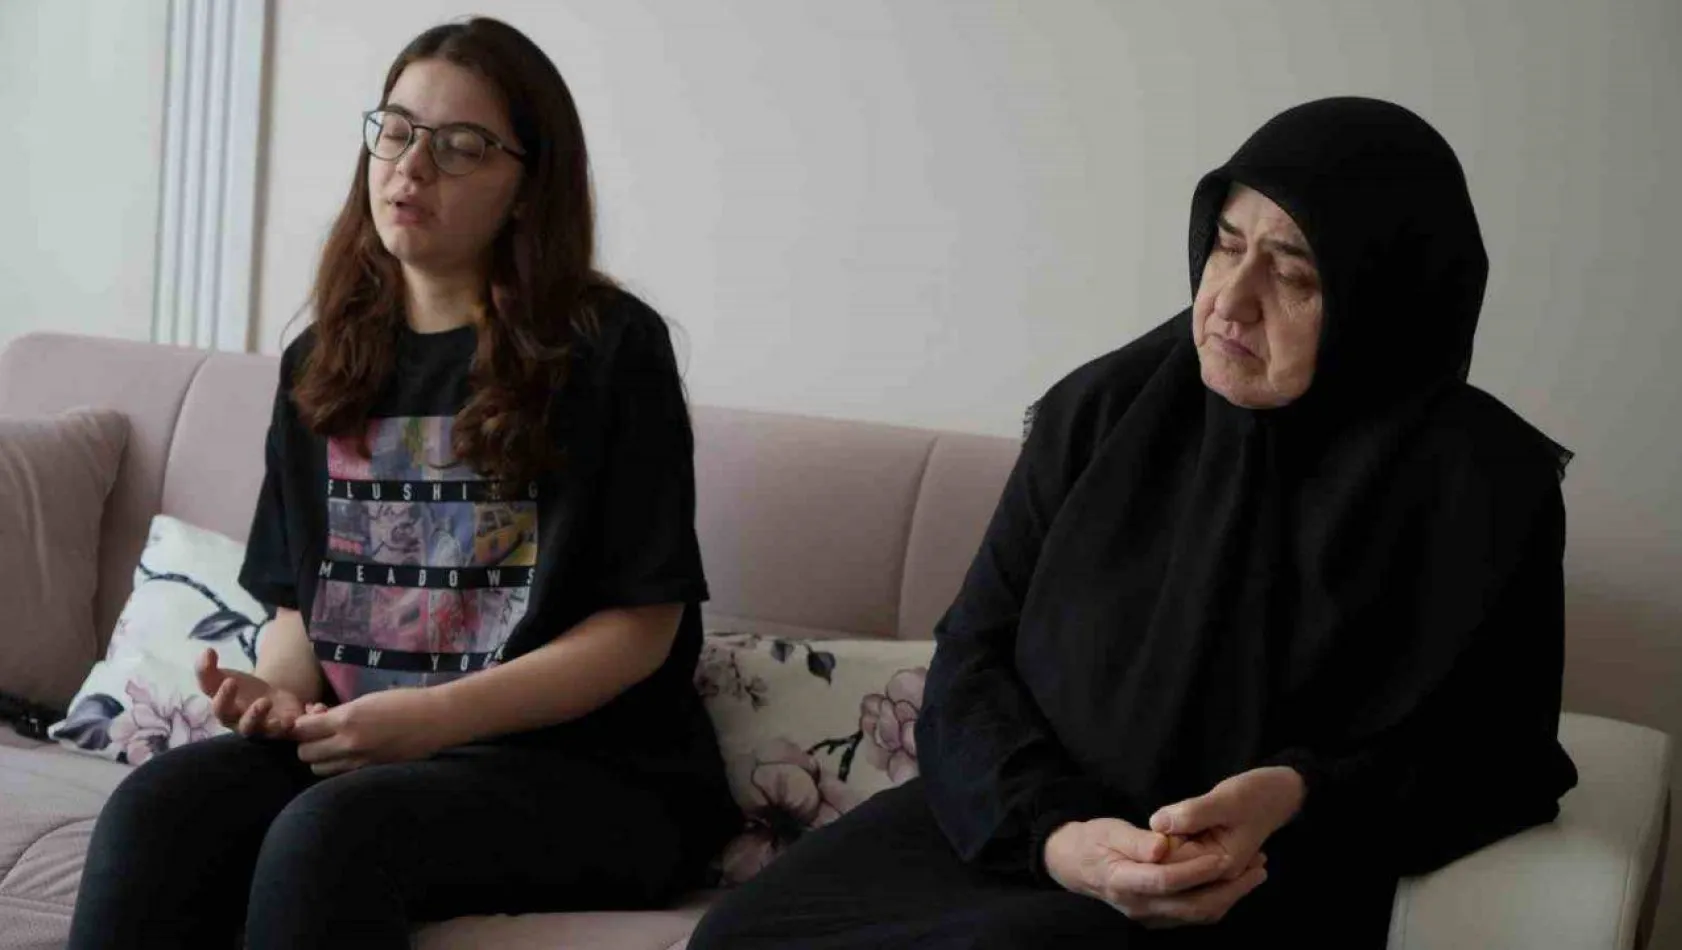 İBB'nin spor kompleksinde boğulan 17 yaşındaki Emirhan'ın ailesi gözyaşları içinde konuştu